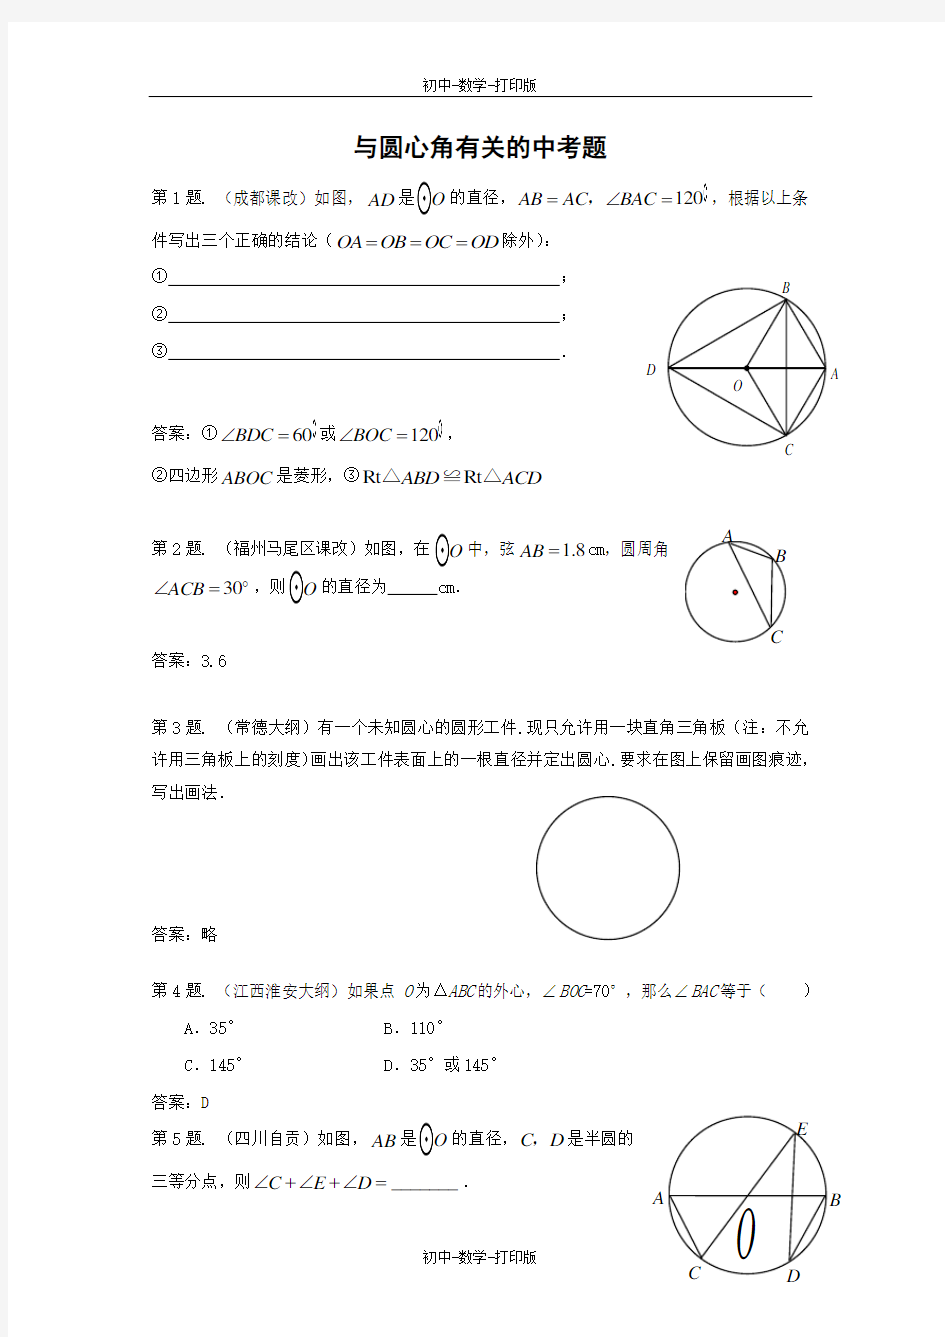 冀教版-数学-九年级上册-与圆心角有关的中考题(2)